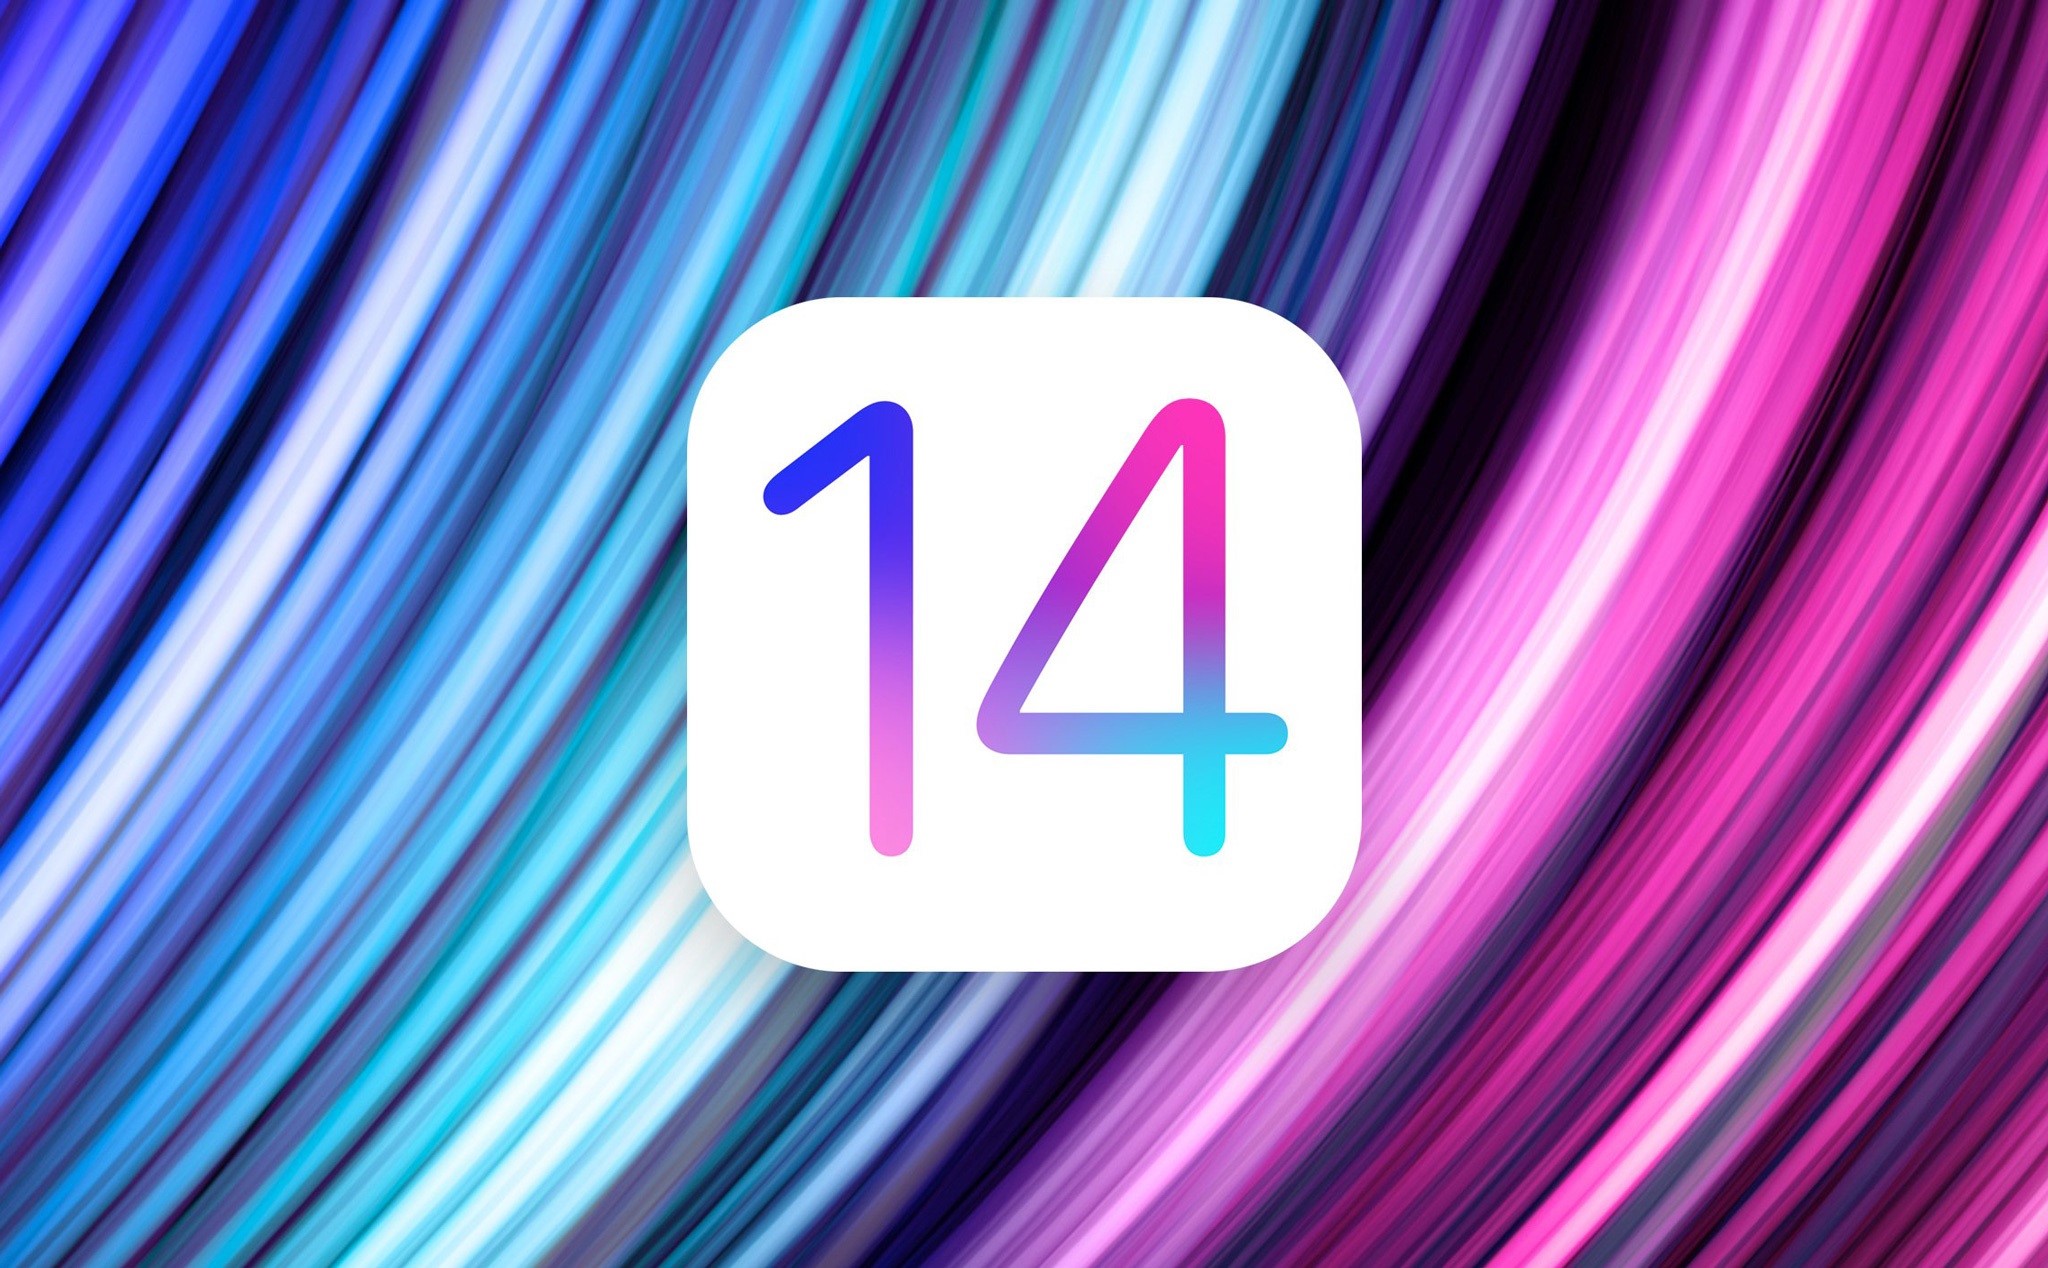 Tổng hợp các tính năng rò rỉ của iOS 14: tuỳ chọn giao diện mới, app AR...